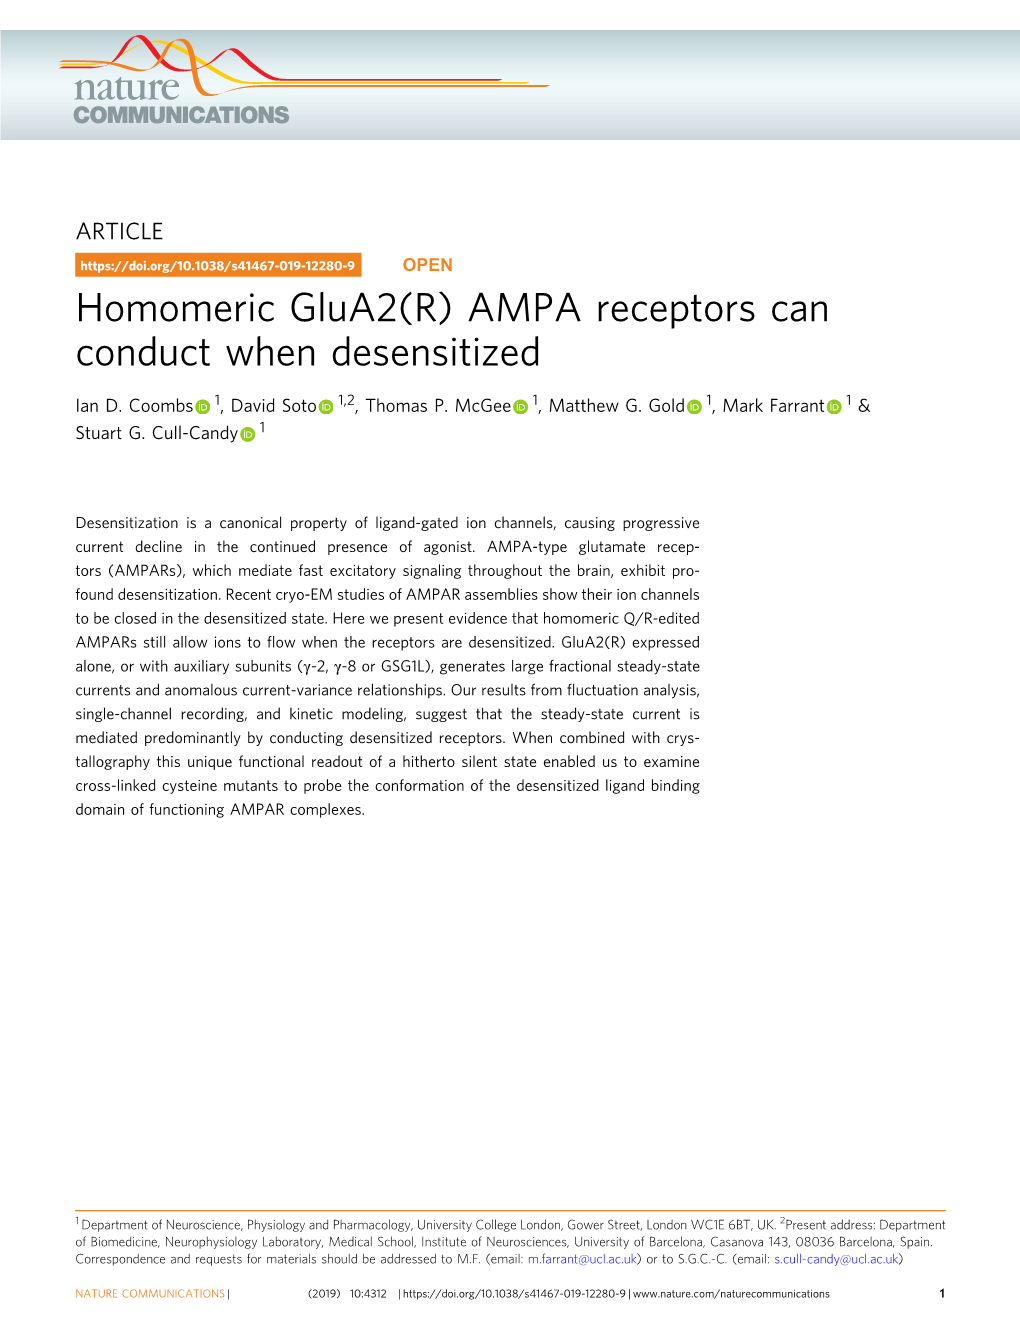 Homomeric Glua2(R) AMPA Receptors Can Conduct When Desensitized